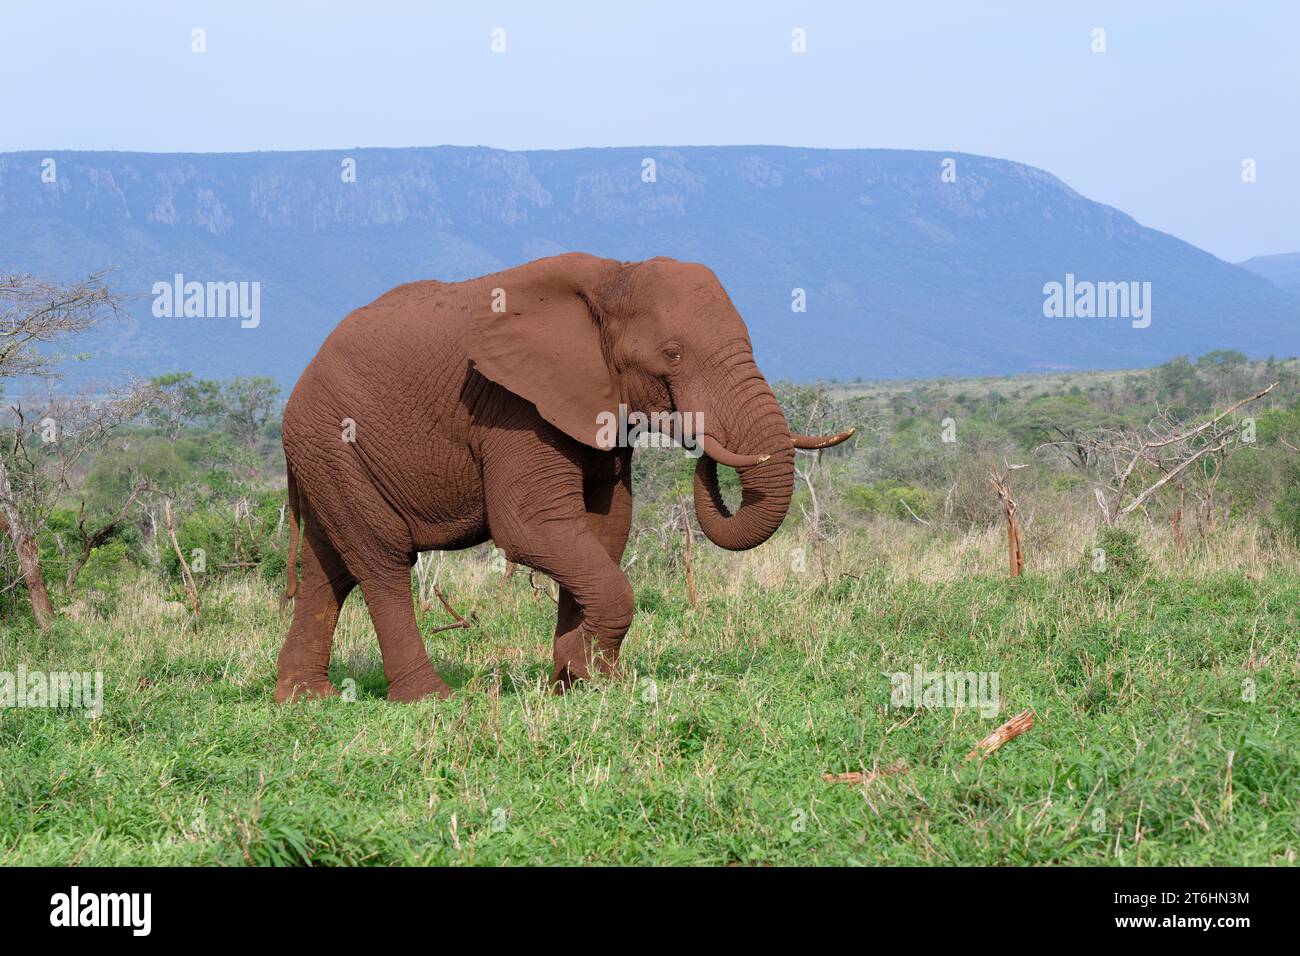 Éléphant de brousse africain (Loxodonta africana) couvert de terre rouge marchant dans la savane, province du Kwazulu Natal, Afrique du Sud Banque D'Images